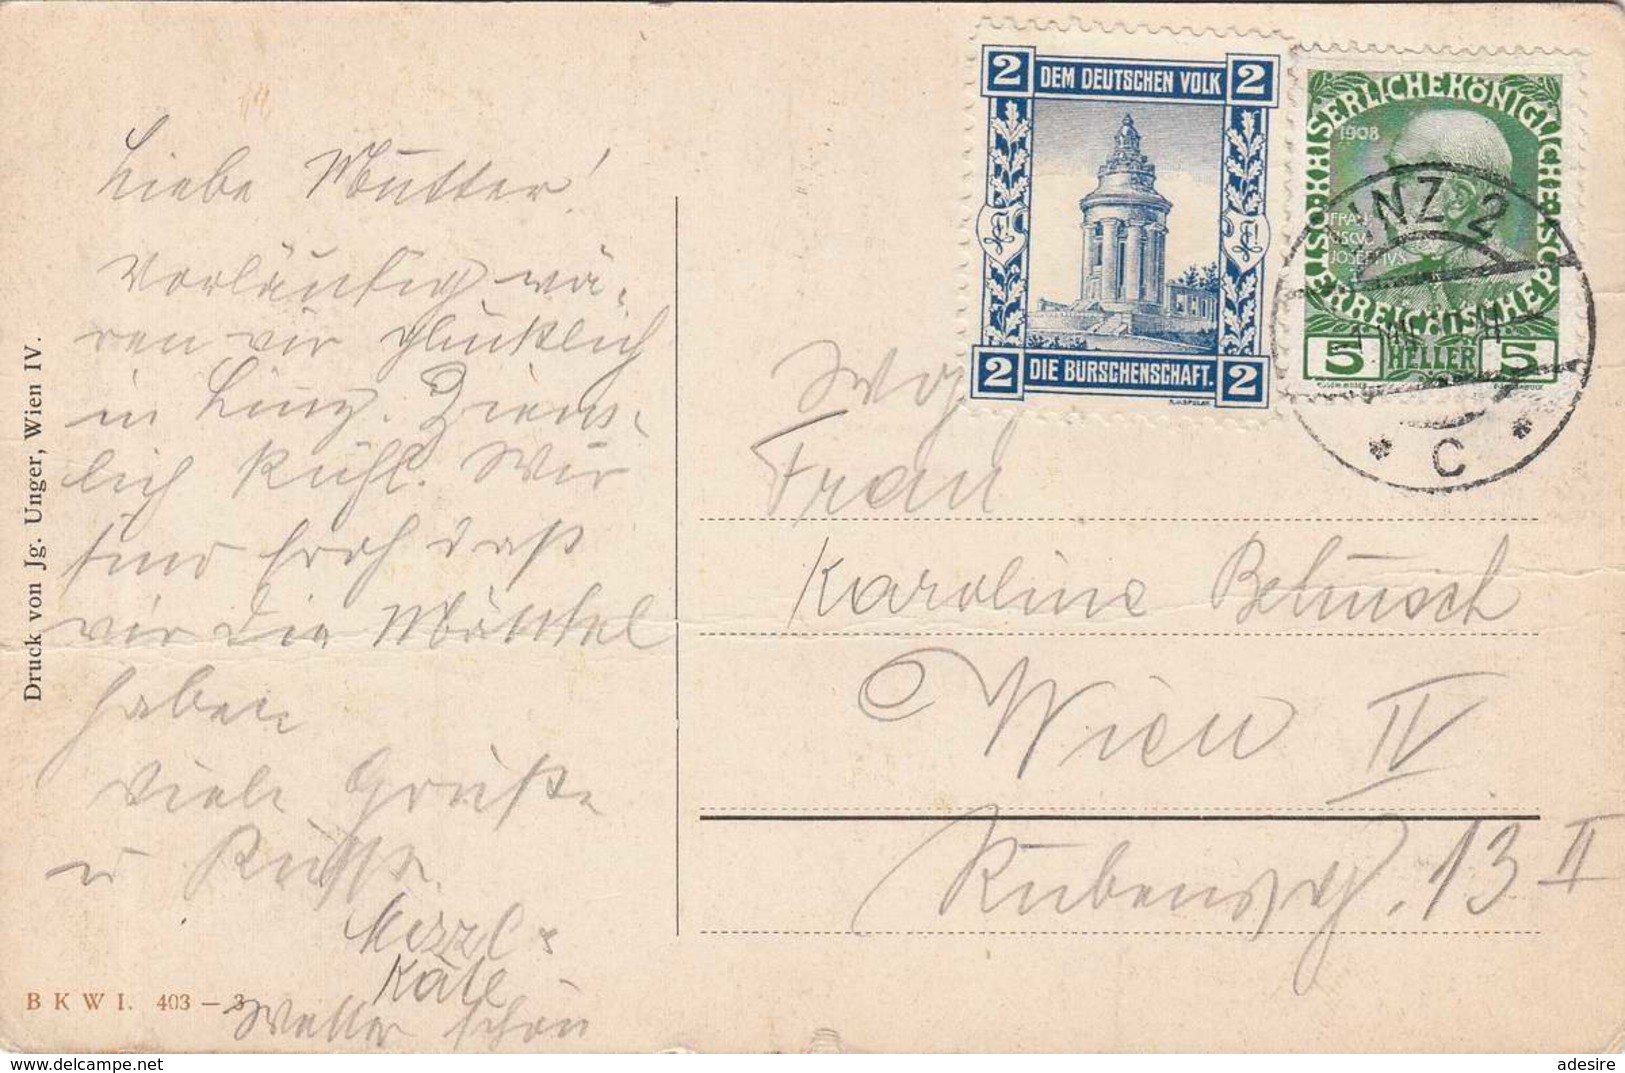 LINZ A.d.Donau, Künstlerkarte, Burschenschaftsmarke 1915? - Linz